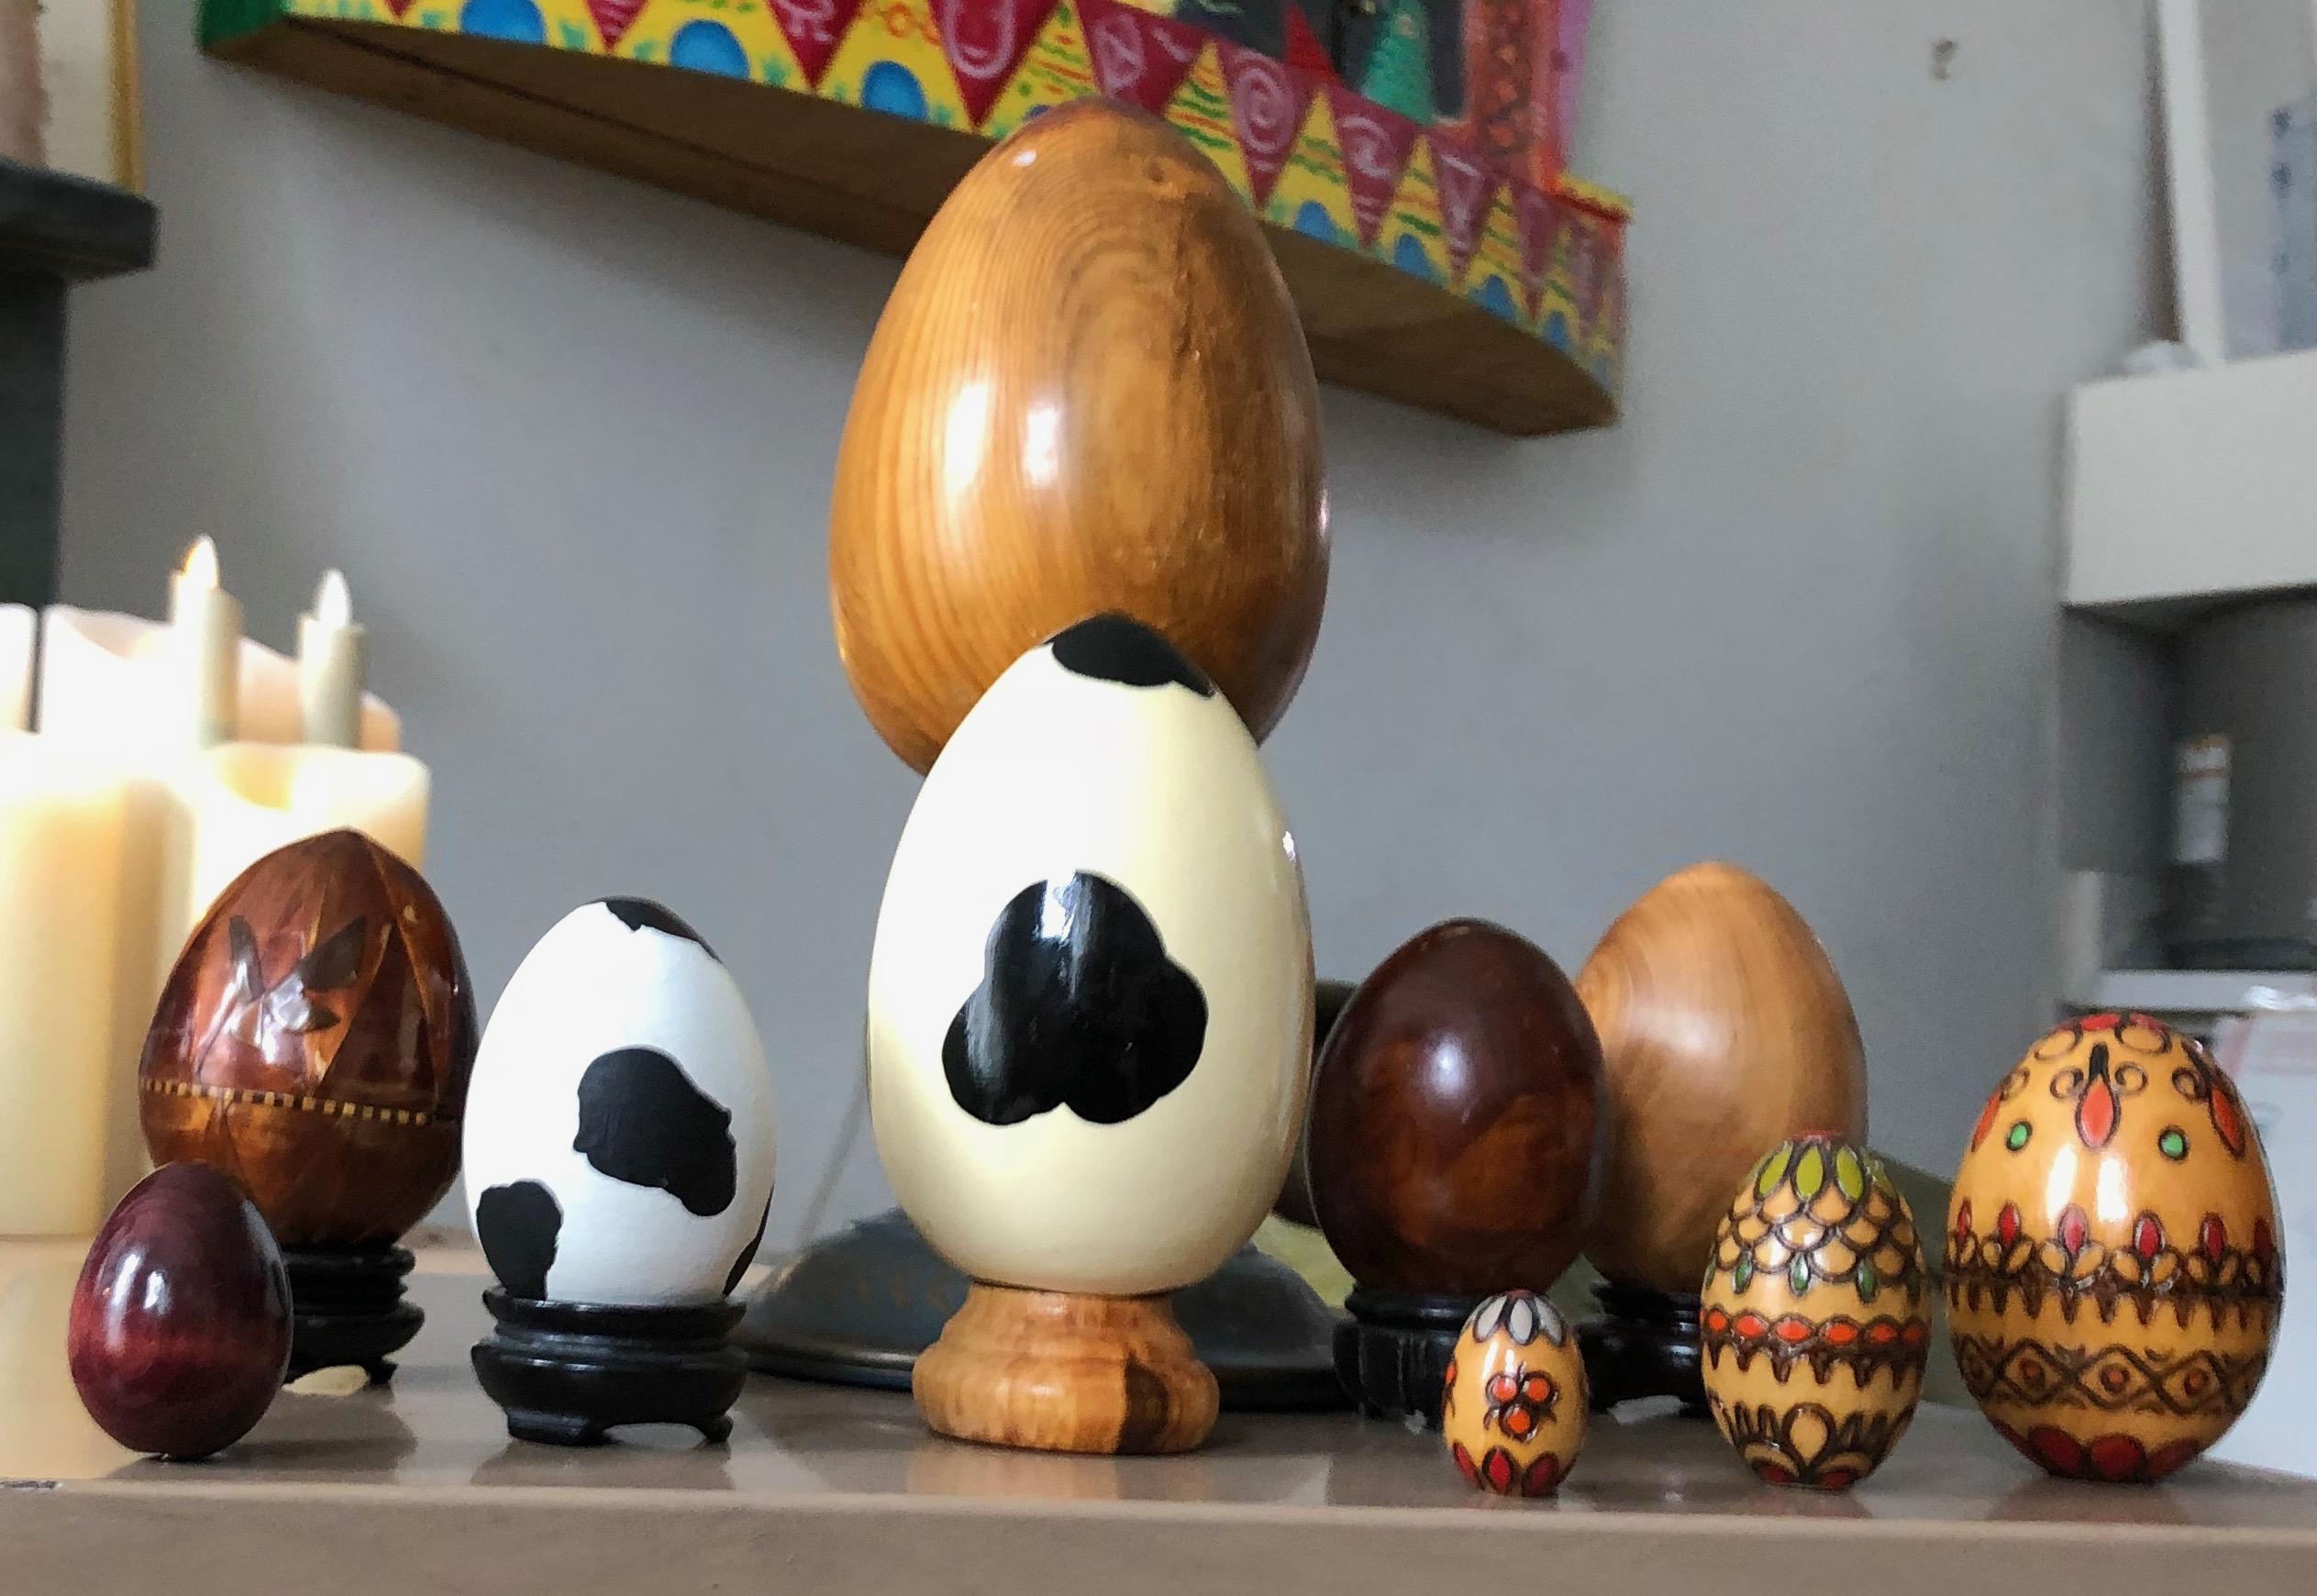 Ensemble d'œufs en bois décoratifs soigneusement sélectionnés dans un style moderne et organique. Différentes tailles, voir photos. Les trois œufs colorés de l'avant s'emboîtent les uns dans les autres, à la manière des poupées russes.
 